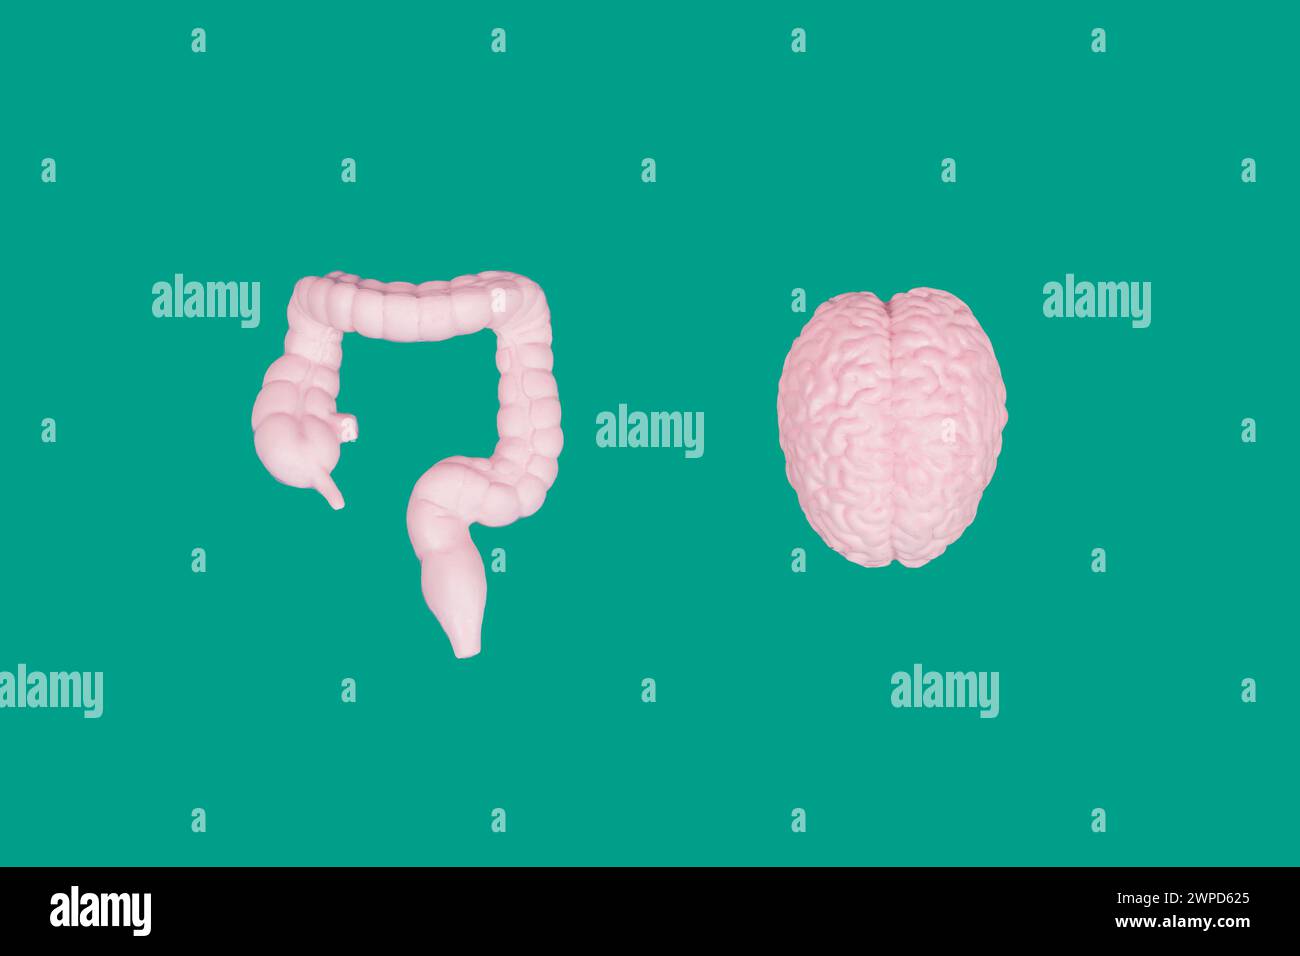 Vista dall'alto di un cervello umano e delle figurine intestinali disposte su uno sfondo verde. Concetto relativo alla salute. Foto Stock